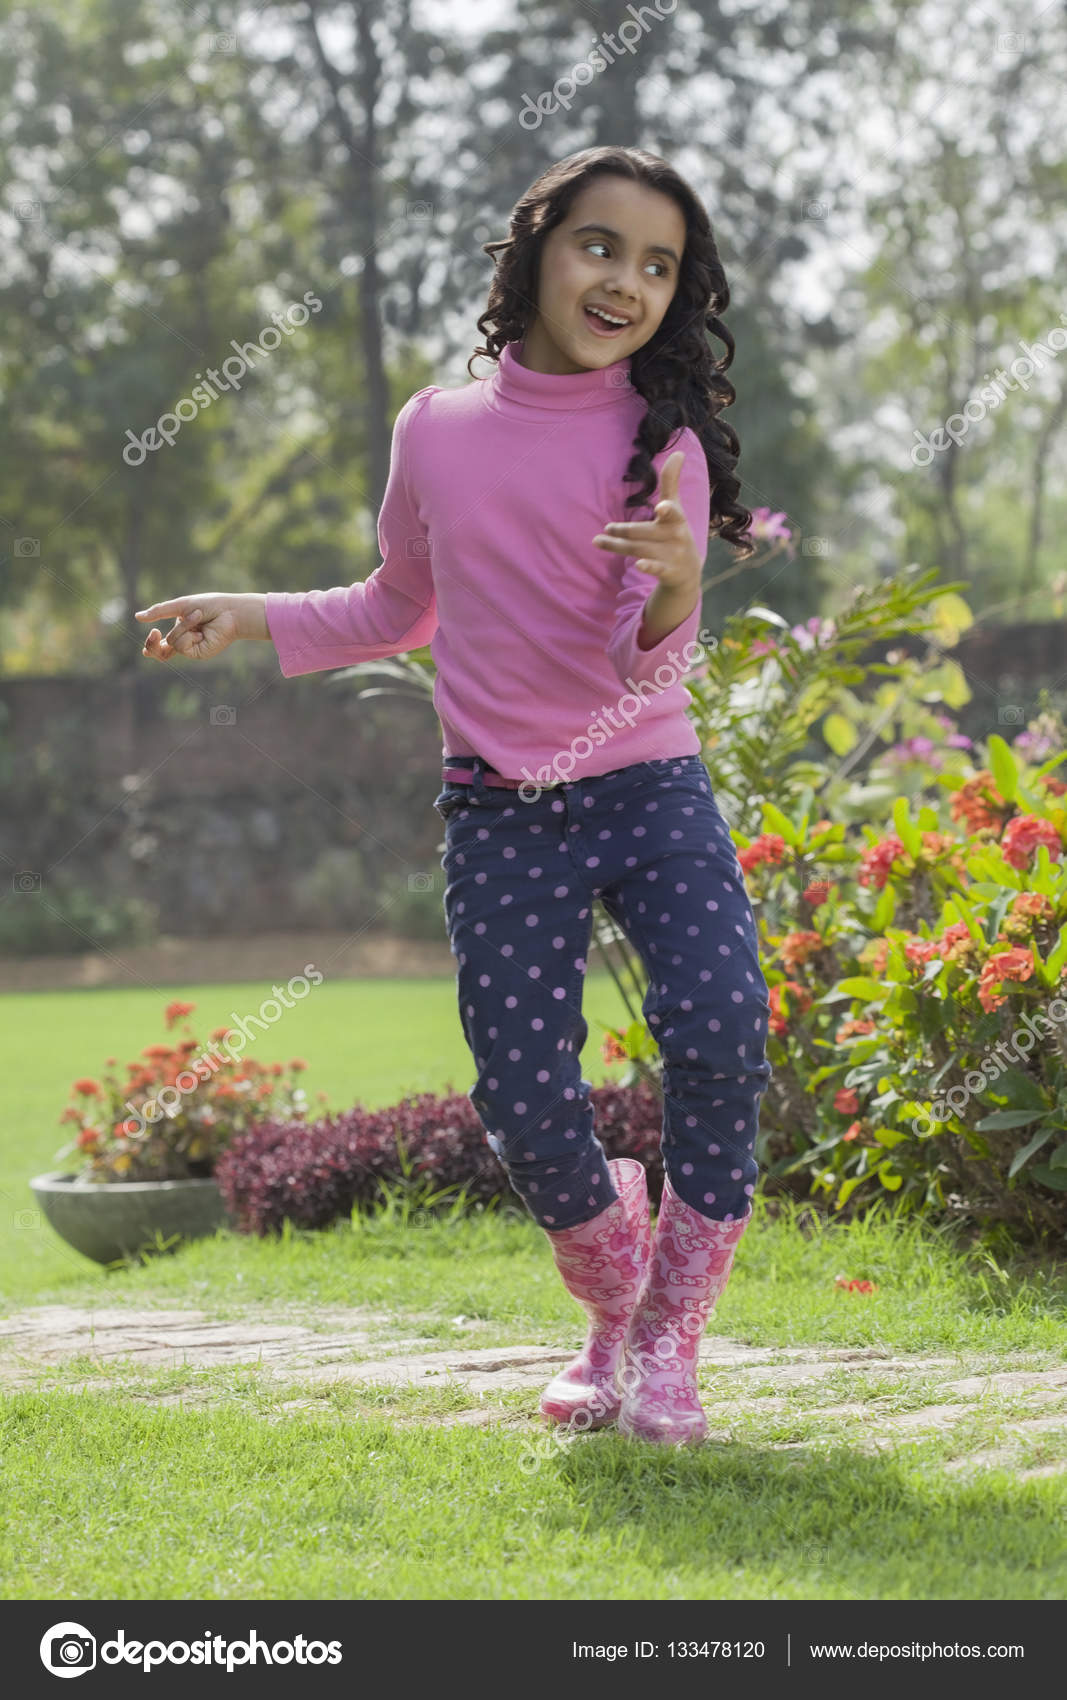 Girl in rubber boots dancing in garden 